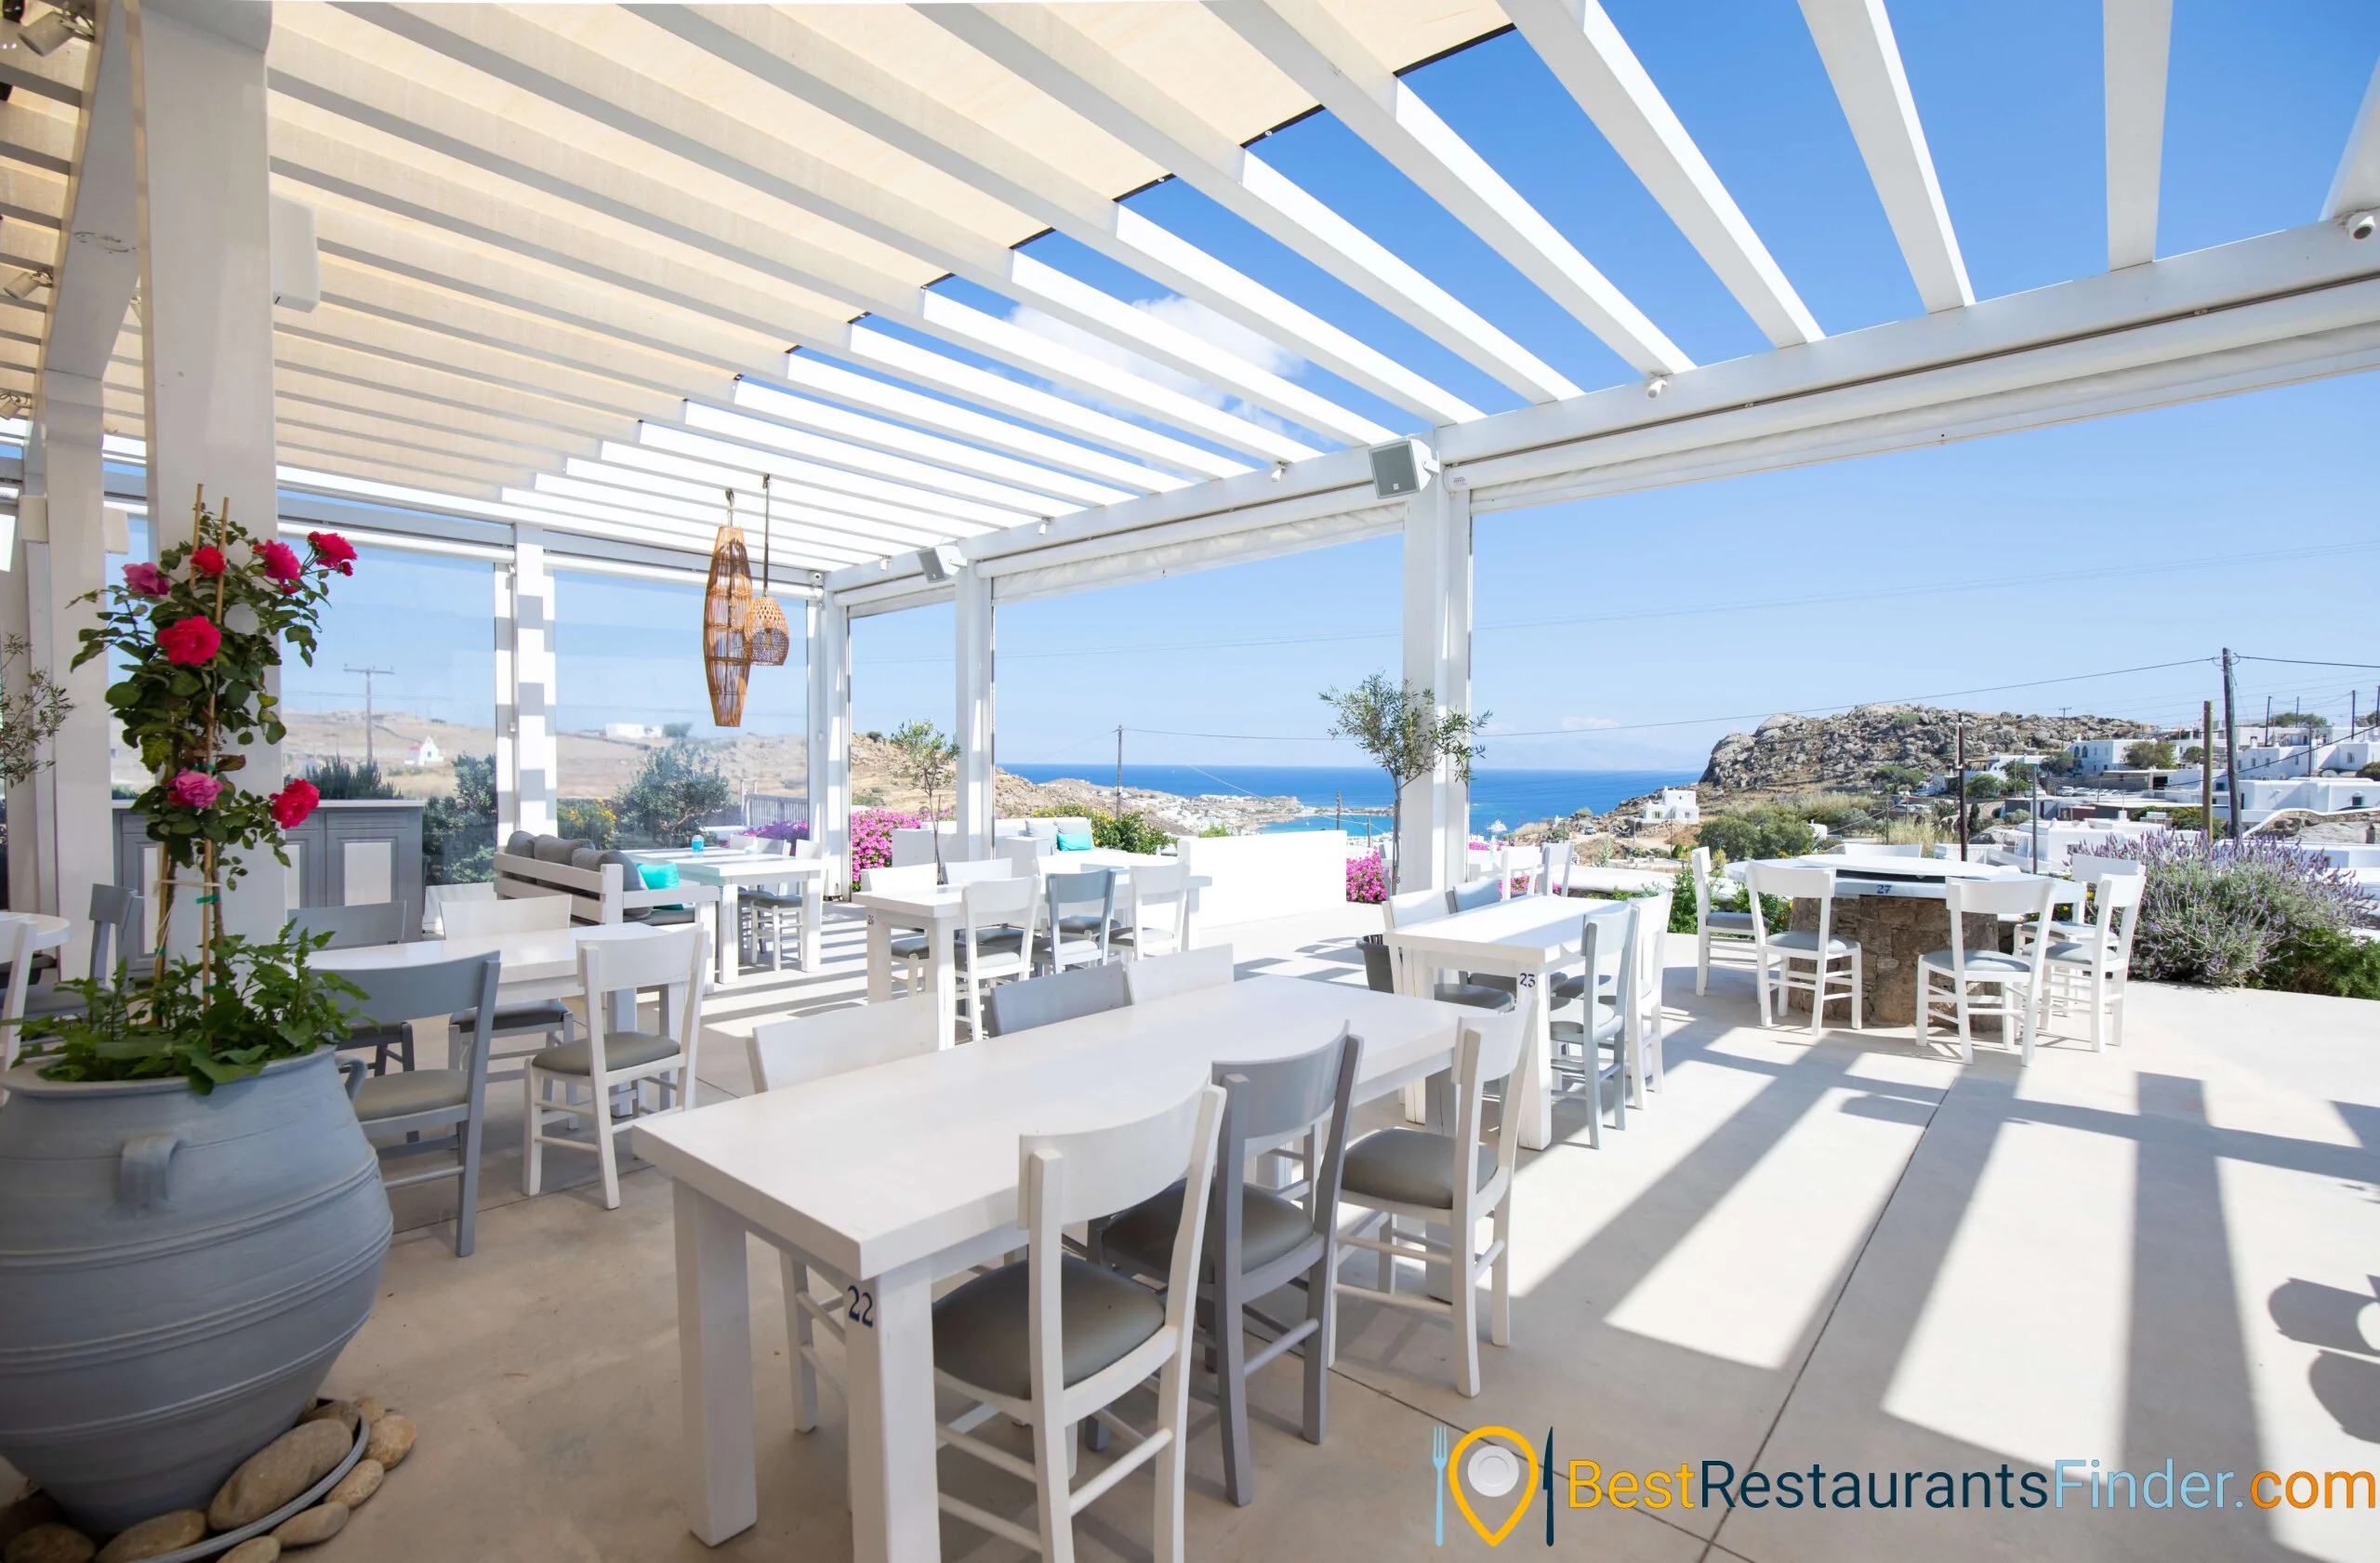 Alesta View Restaurant Mykonos